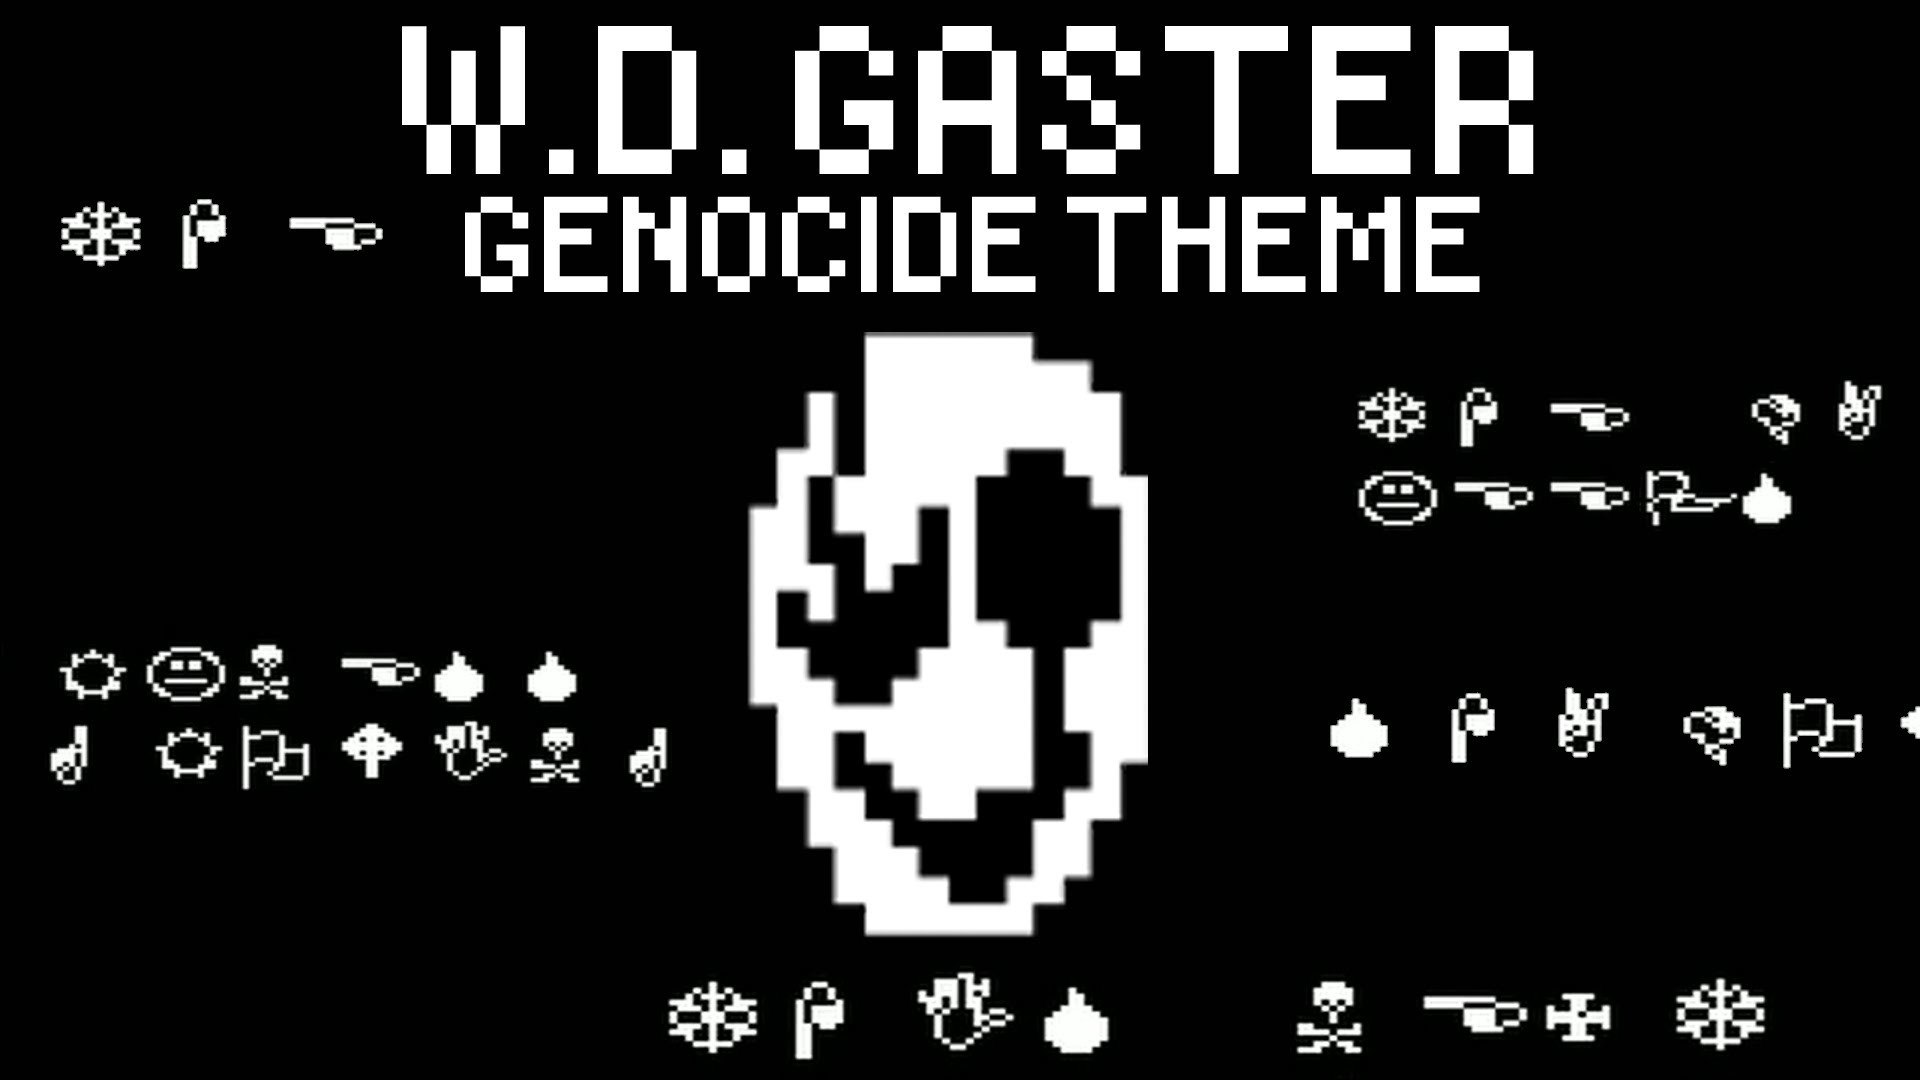 1920x1080 ãHellkiteãUndertale - W.D. GASTER (Genocide Theme) - YouTube